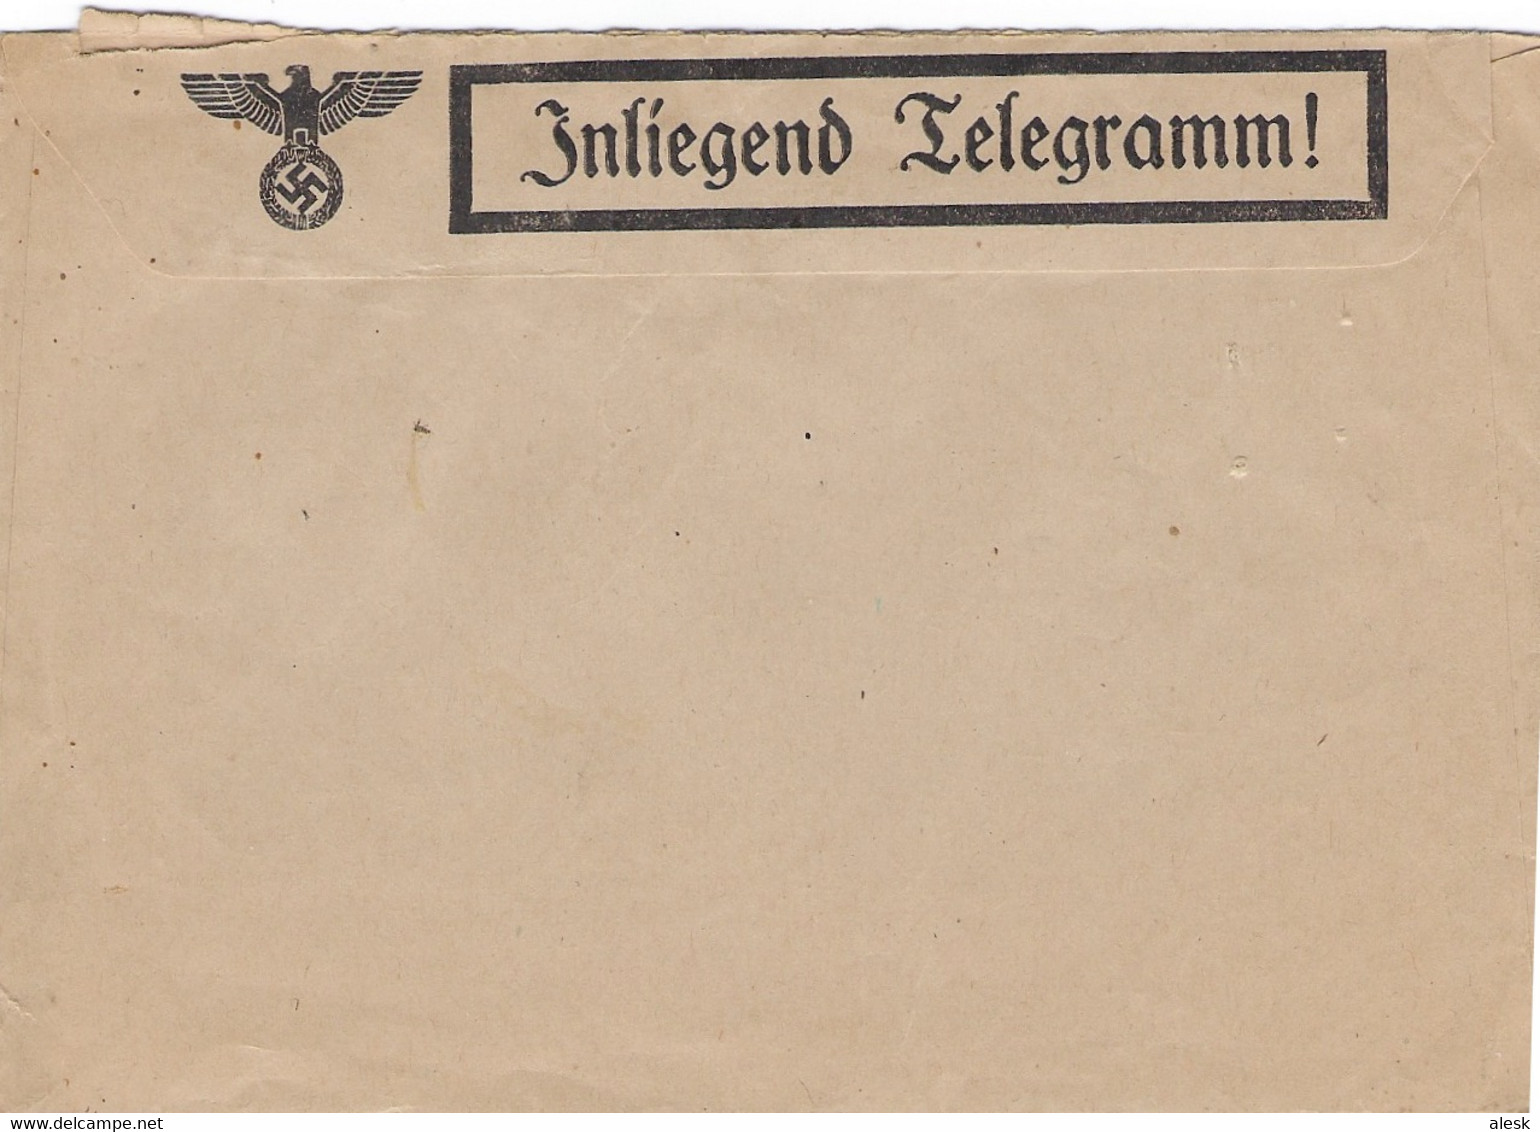 TÉLÉGRAMME - TELEGRAMM - Non Utilisé - Enveloppe + Carte Feldpost - Covers & Documents